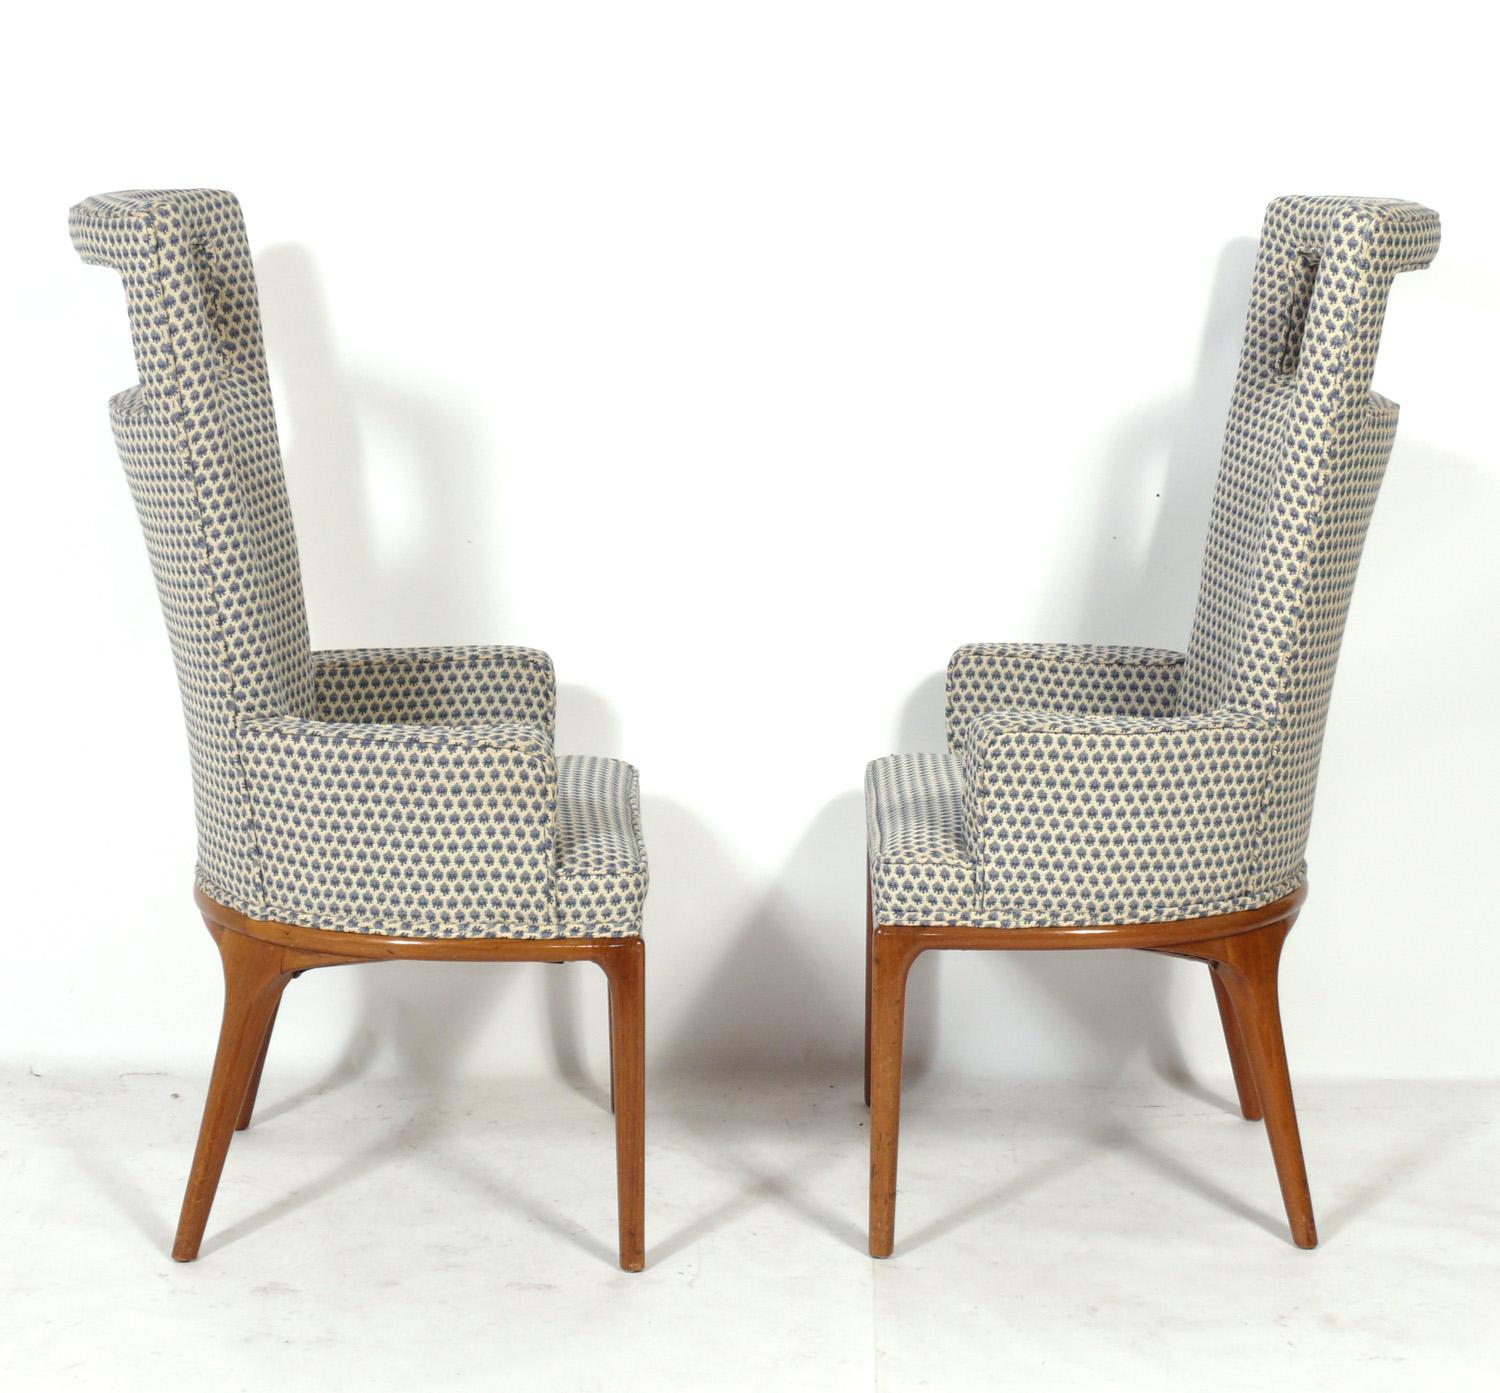 Paire de chaises longues élégantes à haut dossier, conçues par Erwin Lambeth pour Tomlinson, États-Unis, vers les années 1950. Ces chaises sont en cours de finition et de retapissage et peuvent être finies dans la couleur de finition du bois de